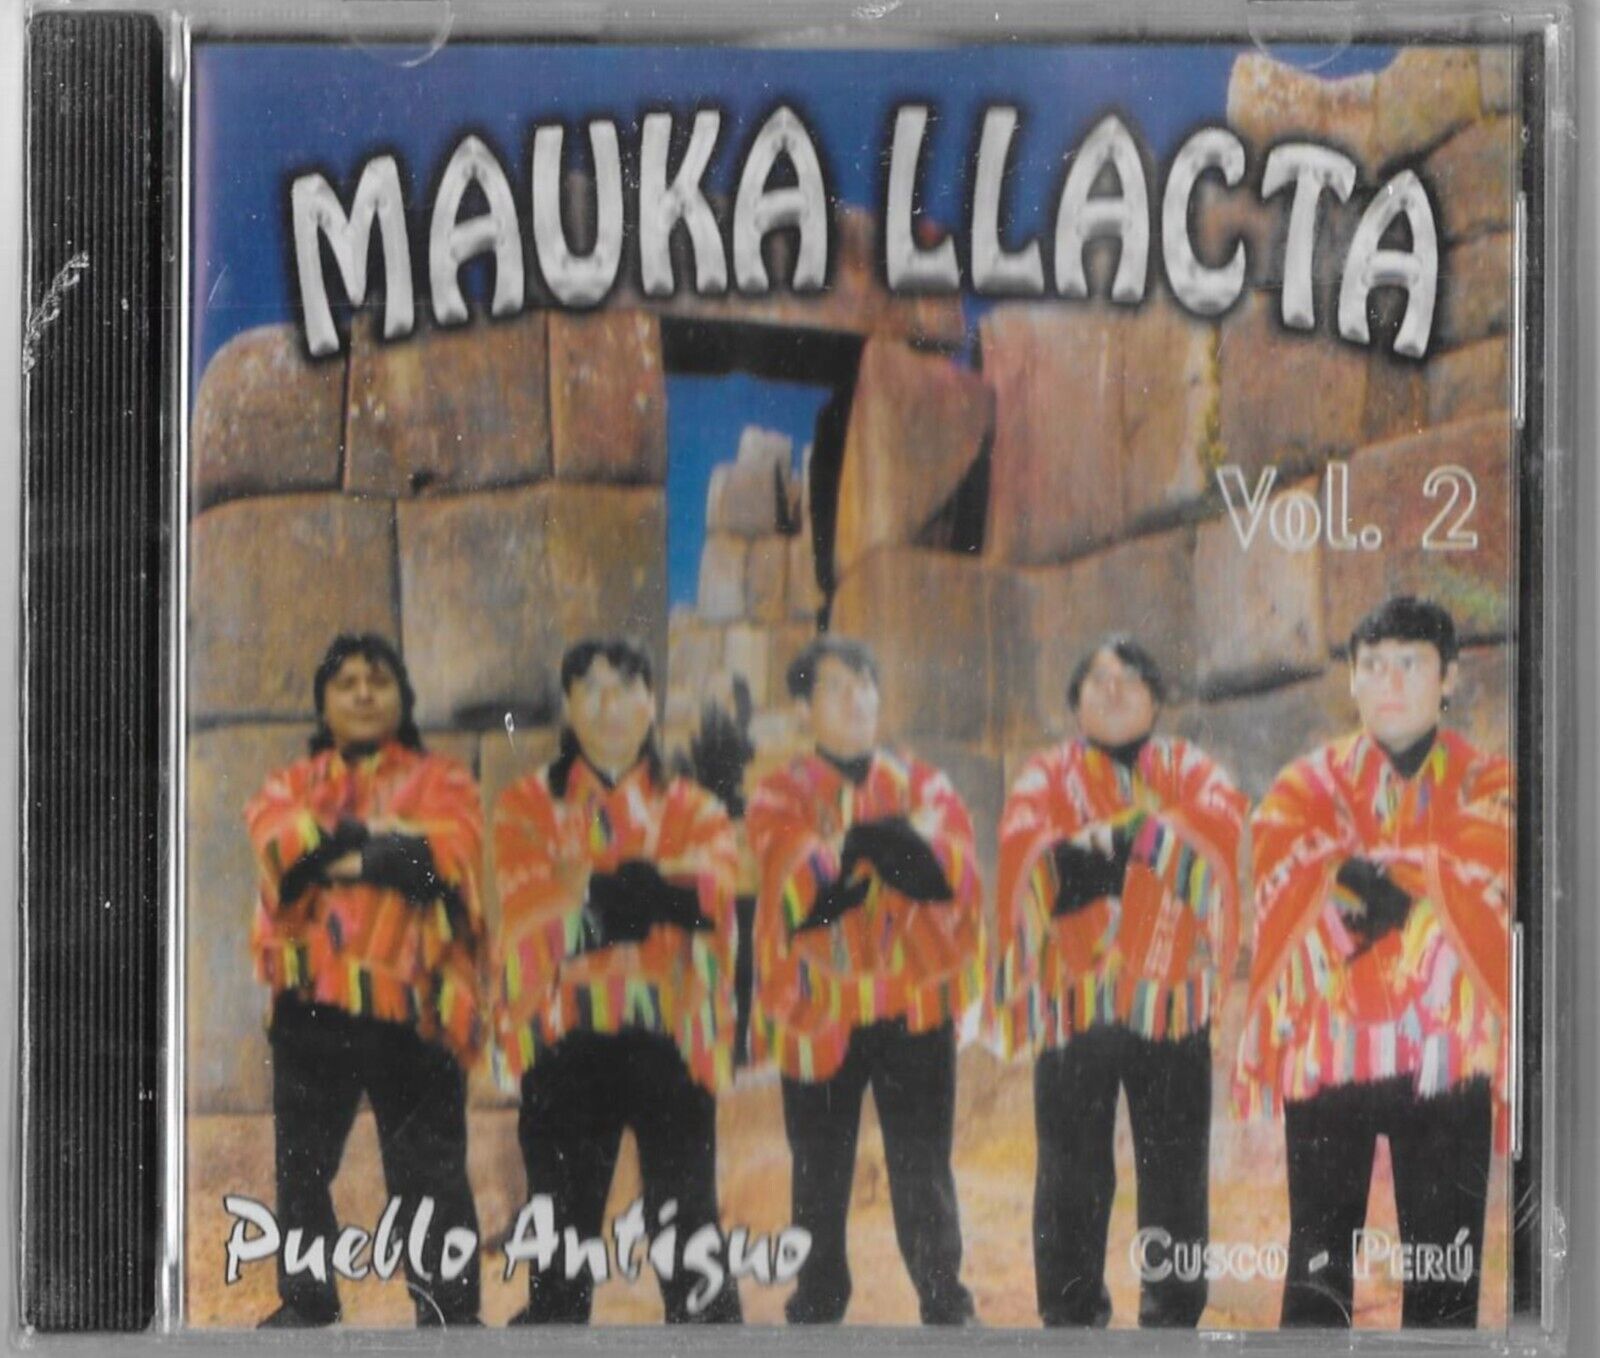 MAUKA LLACTA PUEBLO ANTIQUE VOL. 2 NEW CD